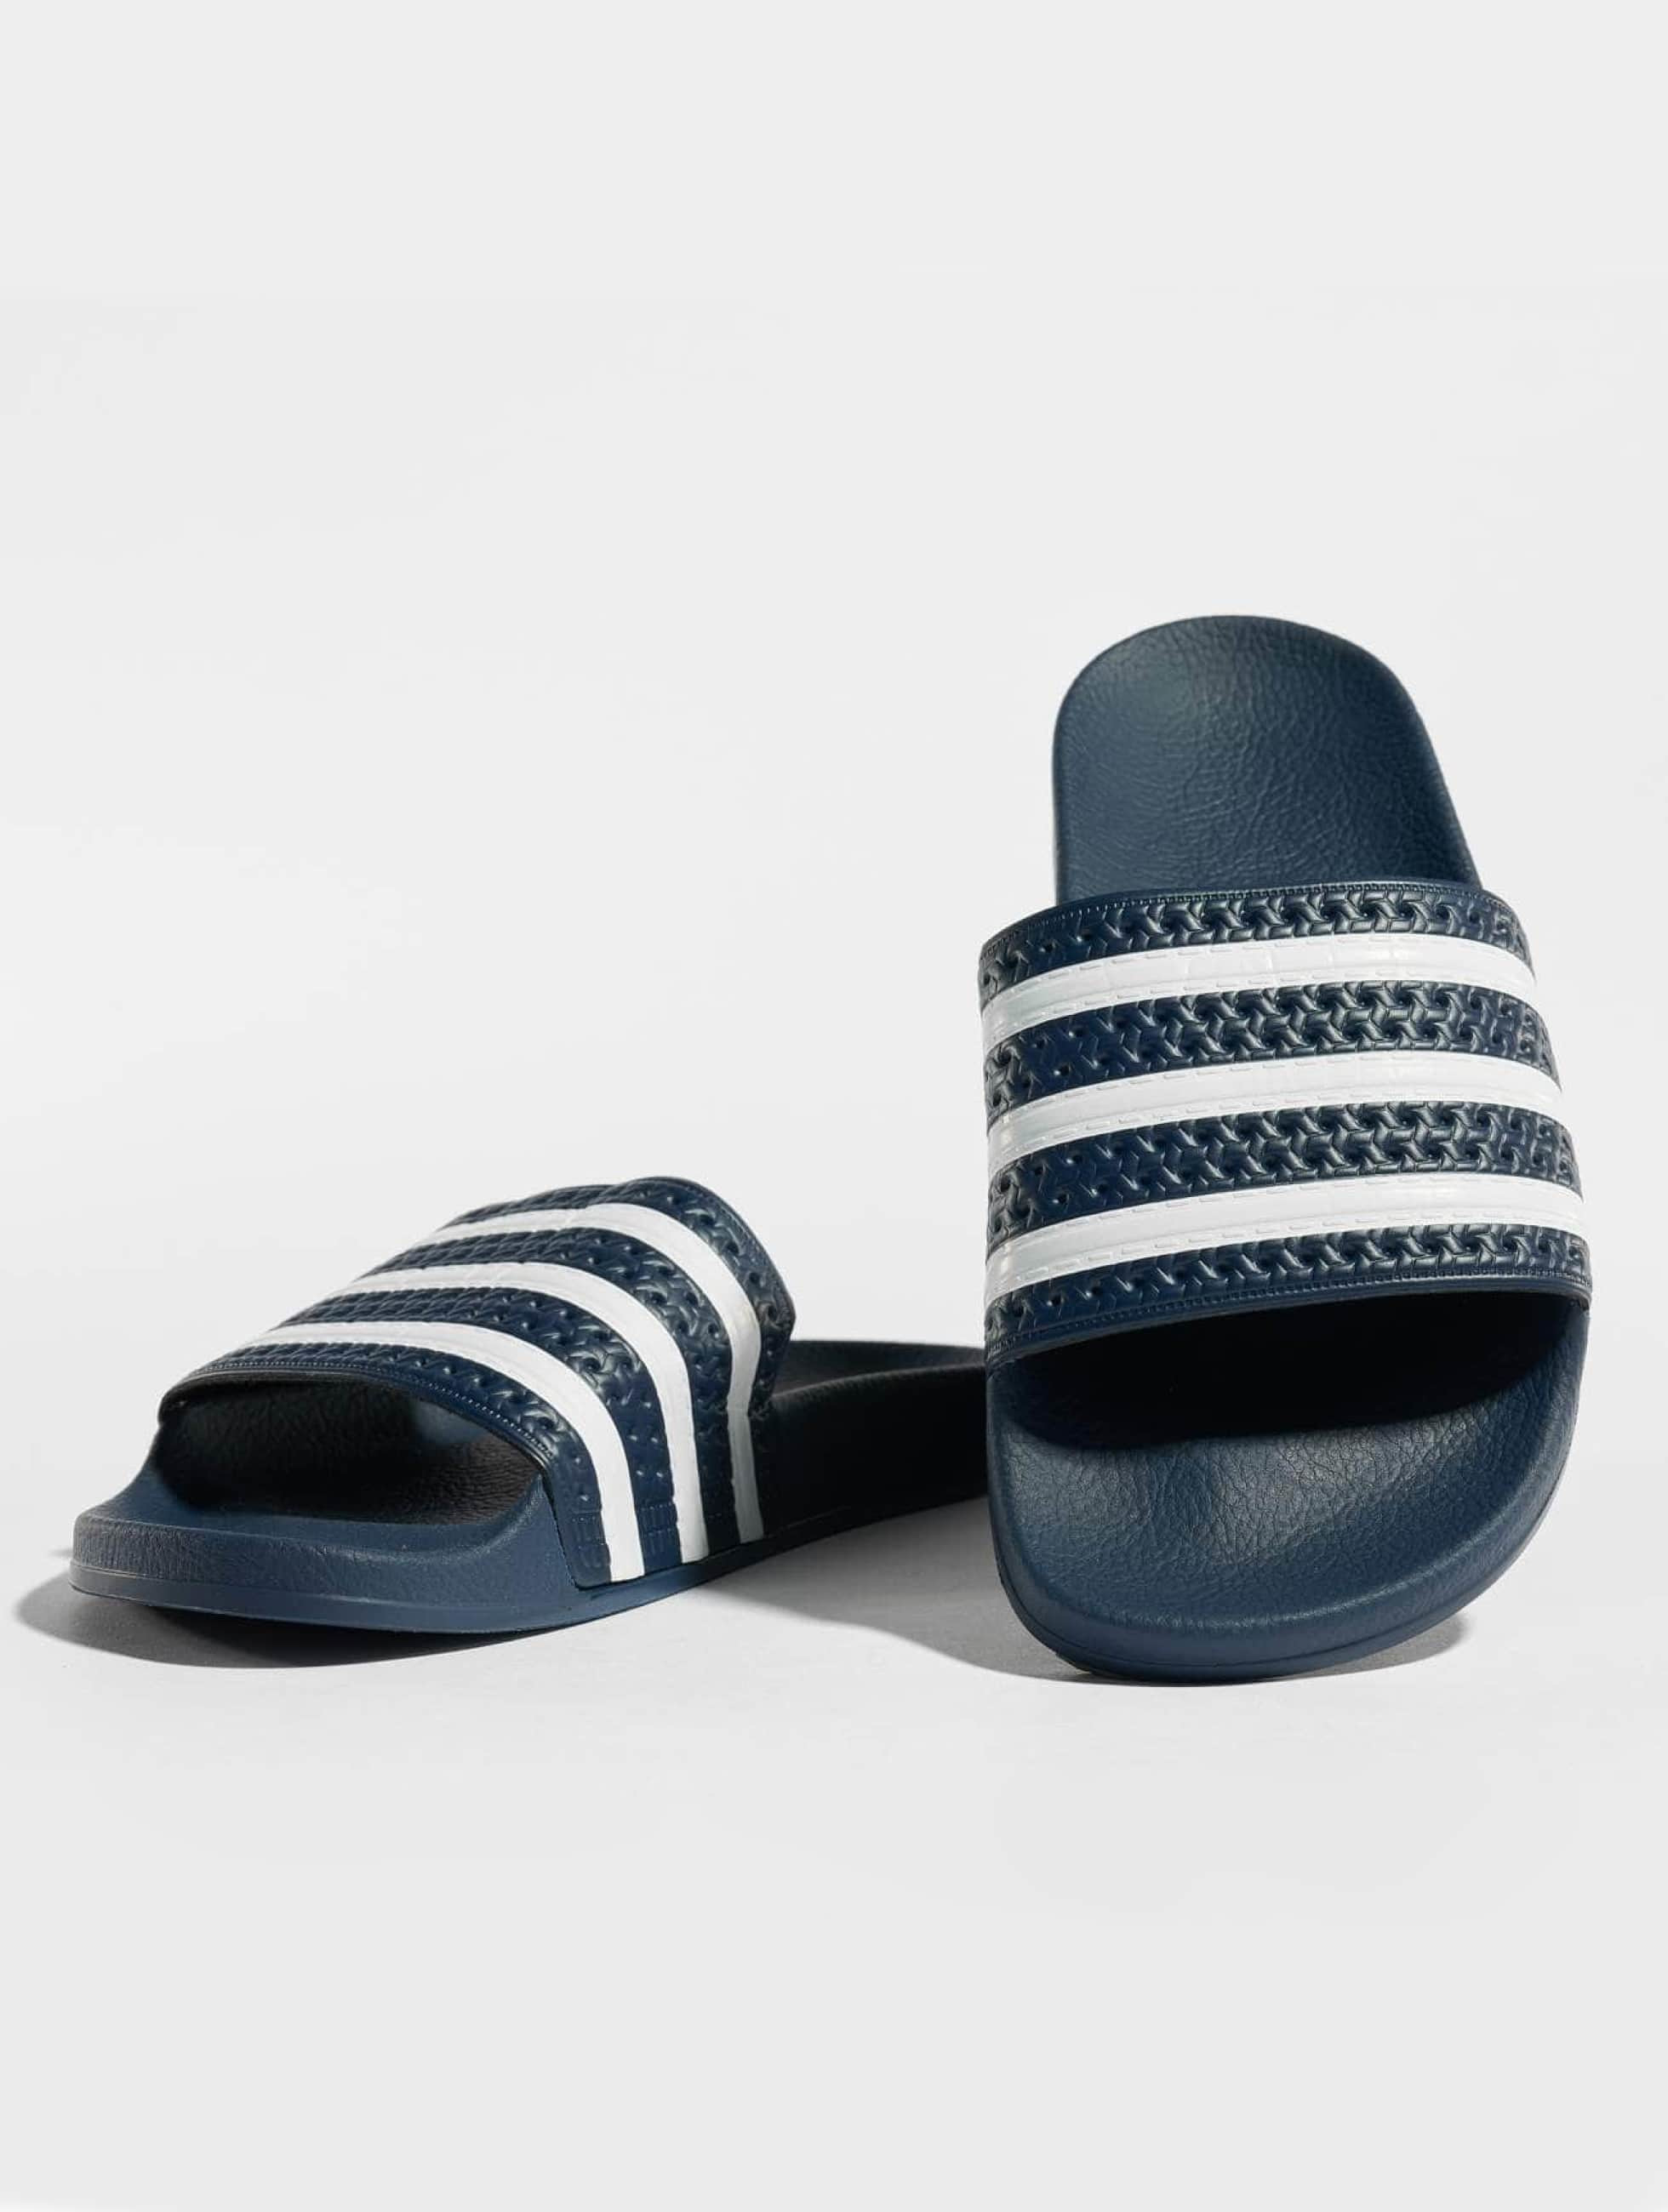 adidas Sko / Sandal i blå